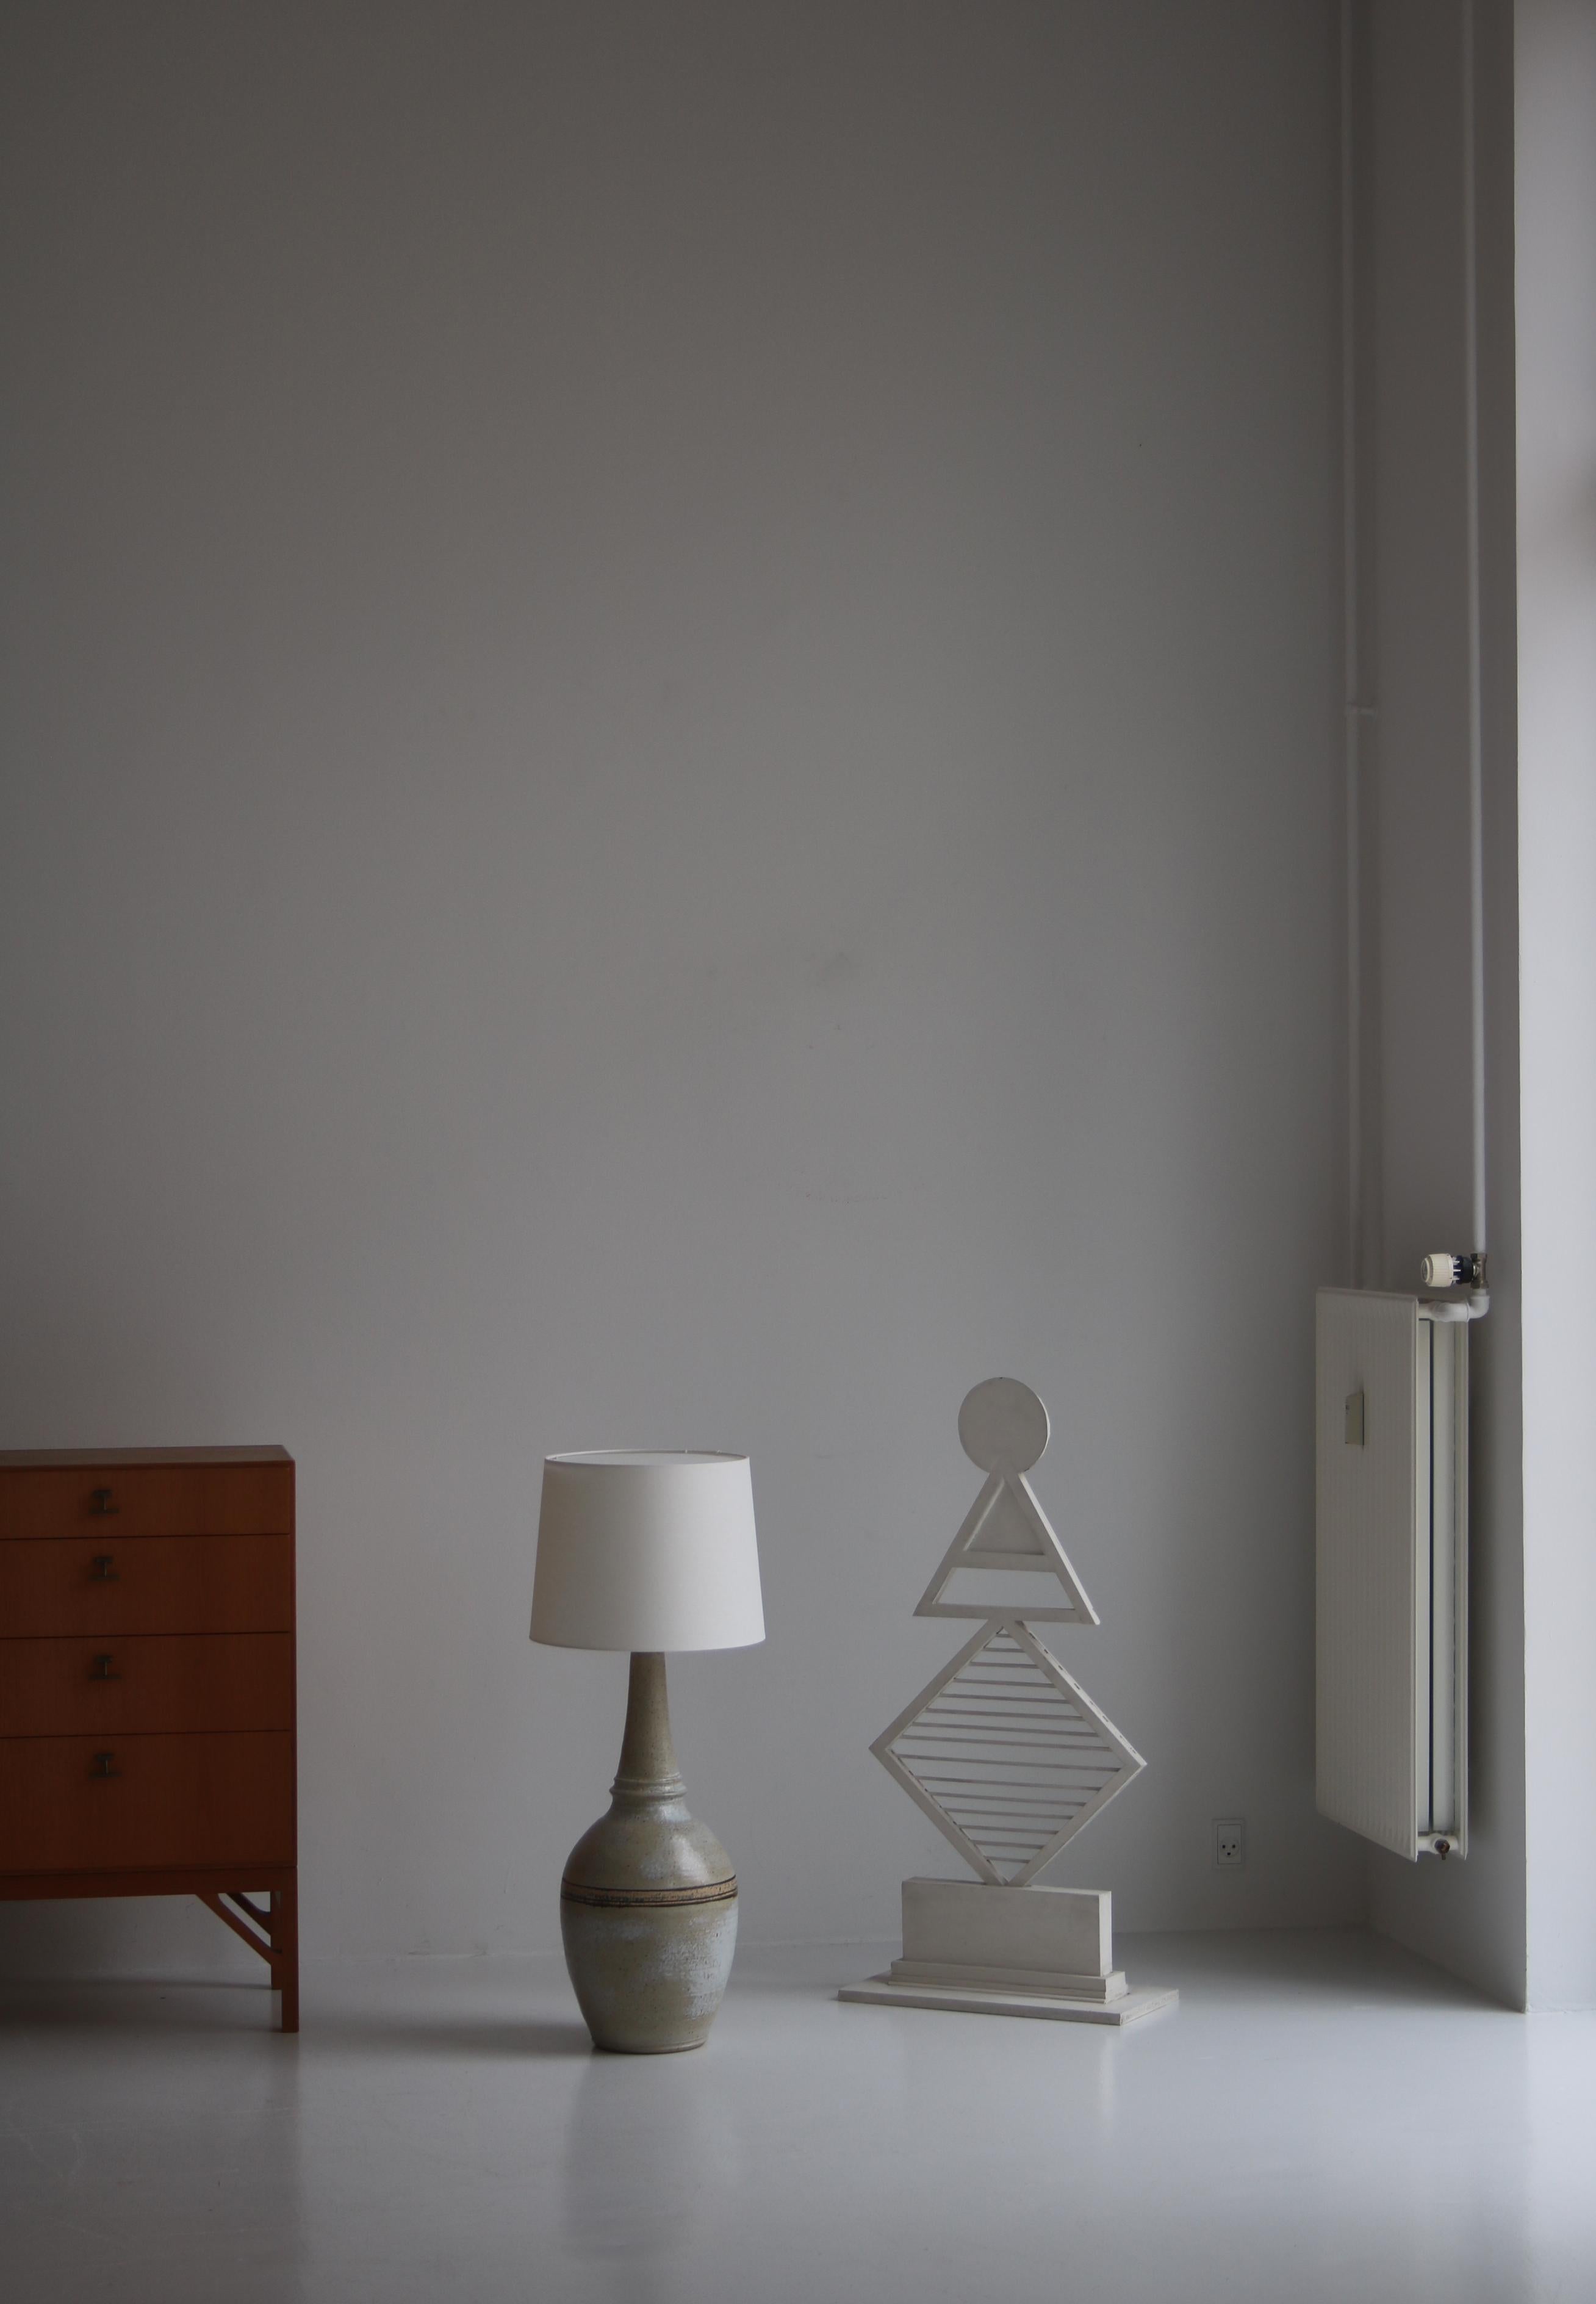 Große Stehlampe aus Keramik, handgefertigt in der Keramikwerkstatt Løvemose in Dänemark in den 1960er Jahren. Der Sockel ist aus Steingut mit einer wunderschönen grau gesprenkelten Glasur gefertigt. 
Løvemose war eine Töpferei in der Stadt Kædeby